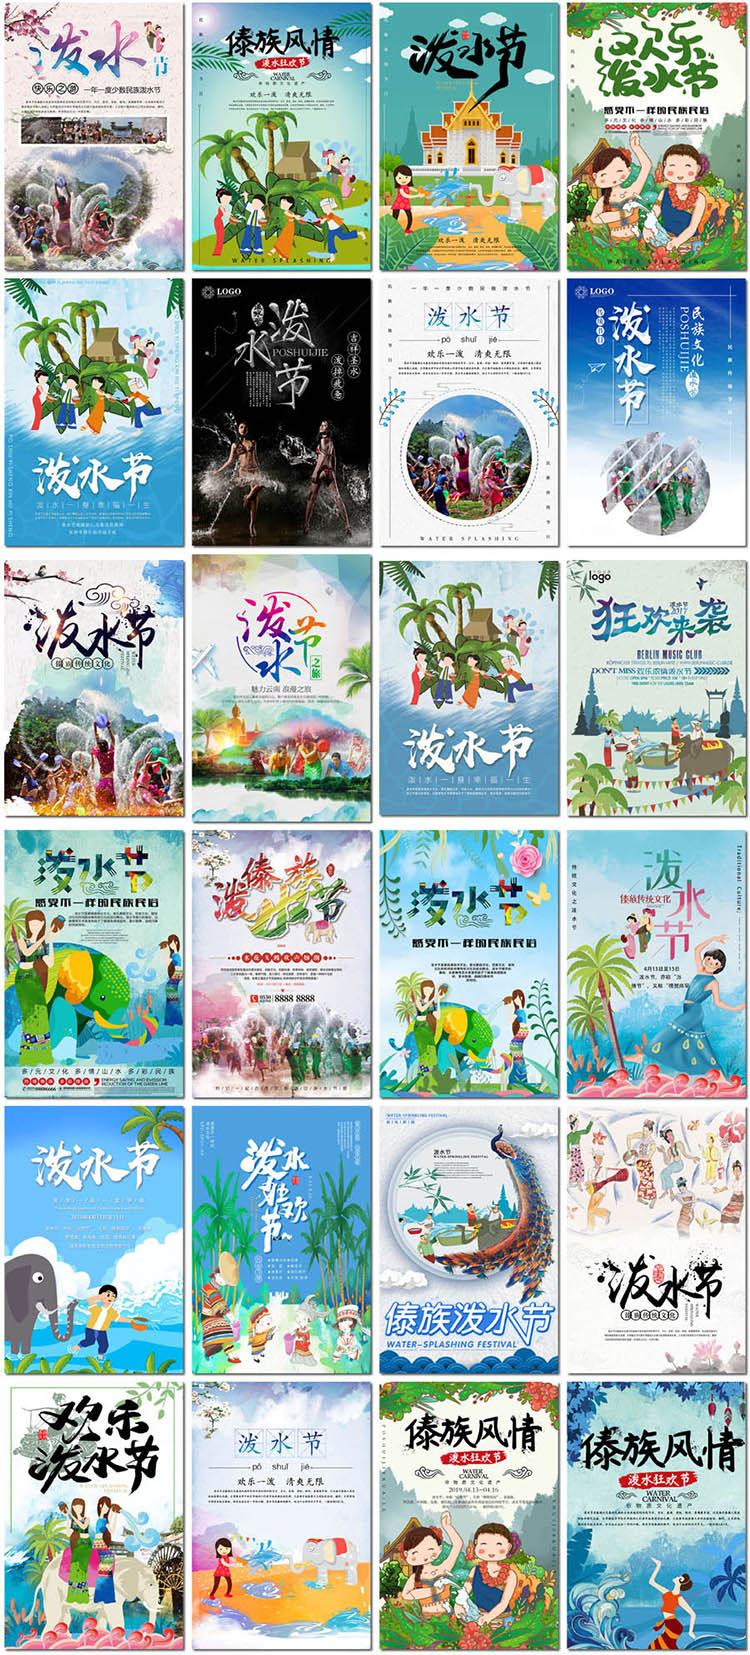 泼水节海报傣族旅游传统节日非物质遗产文化psd海报模板素材设计